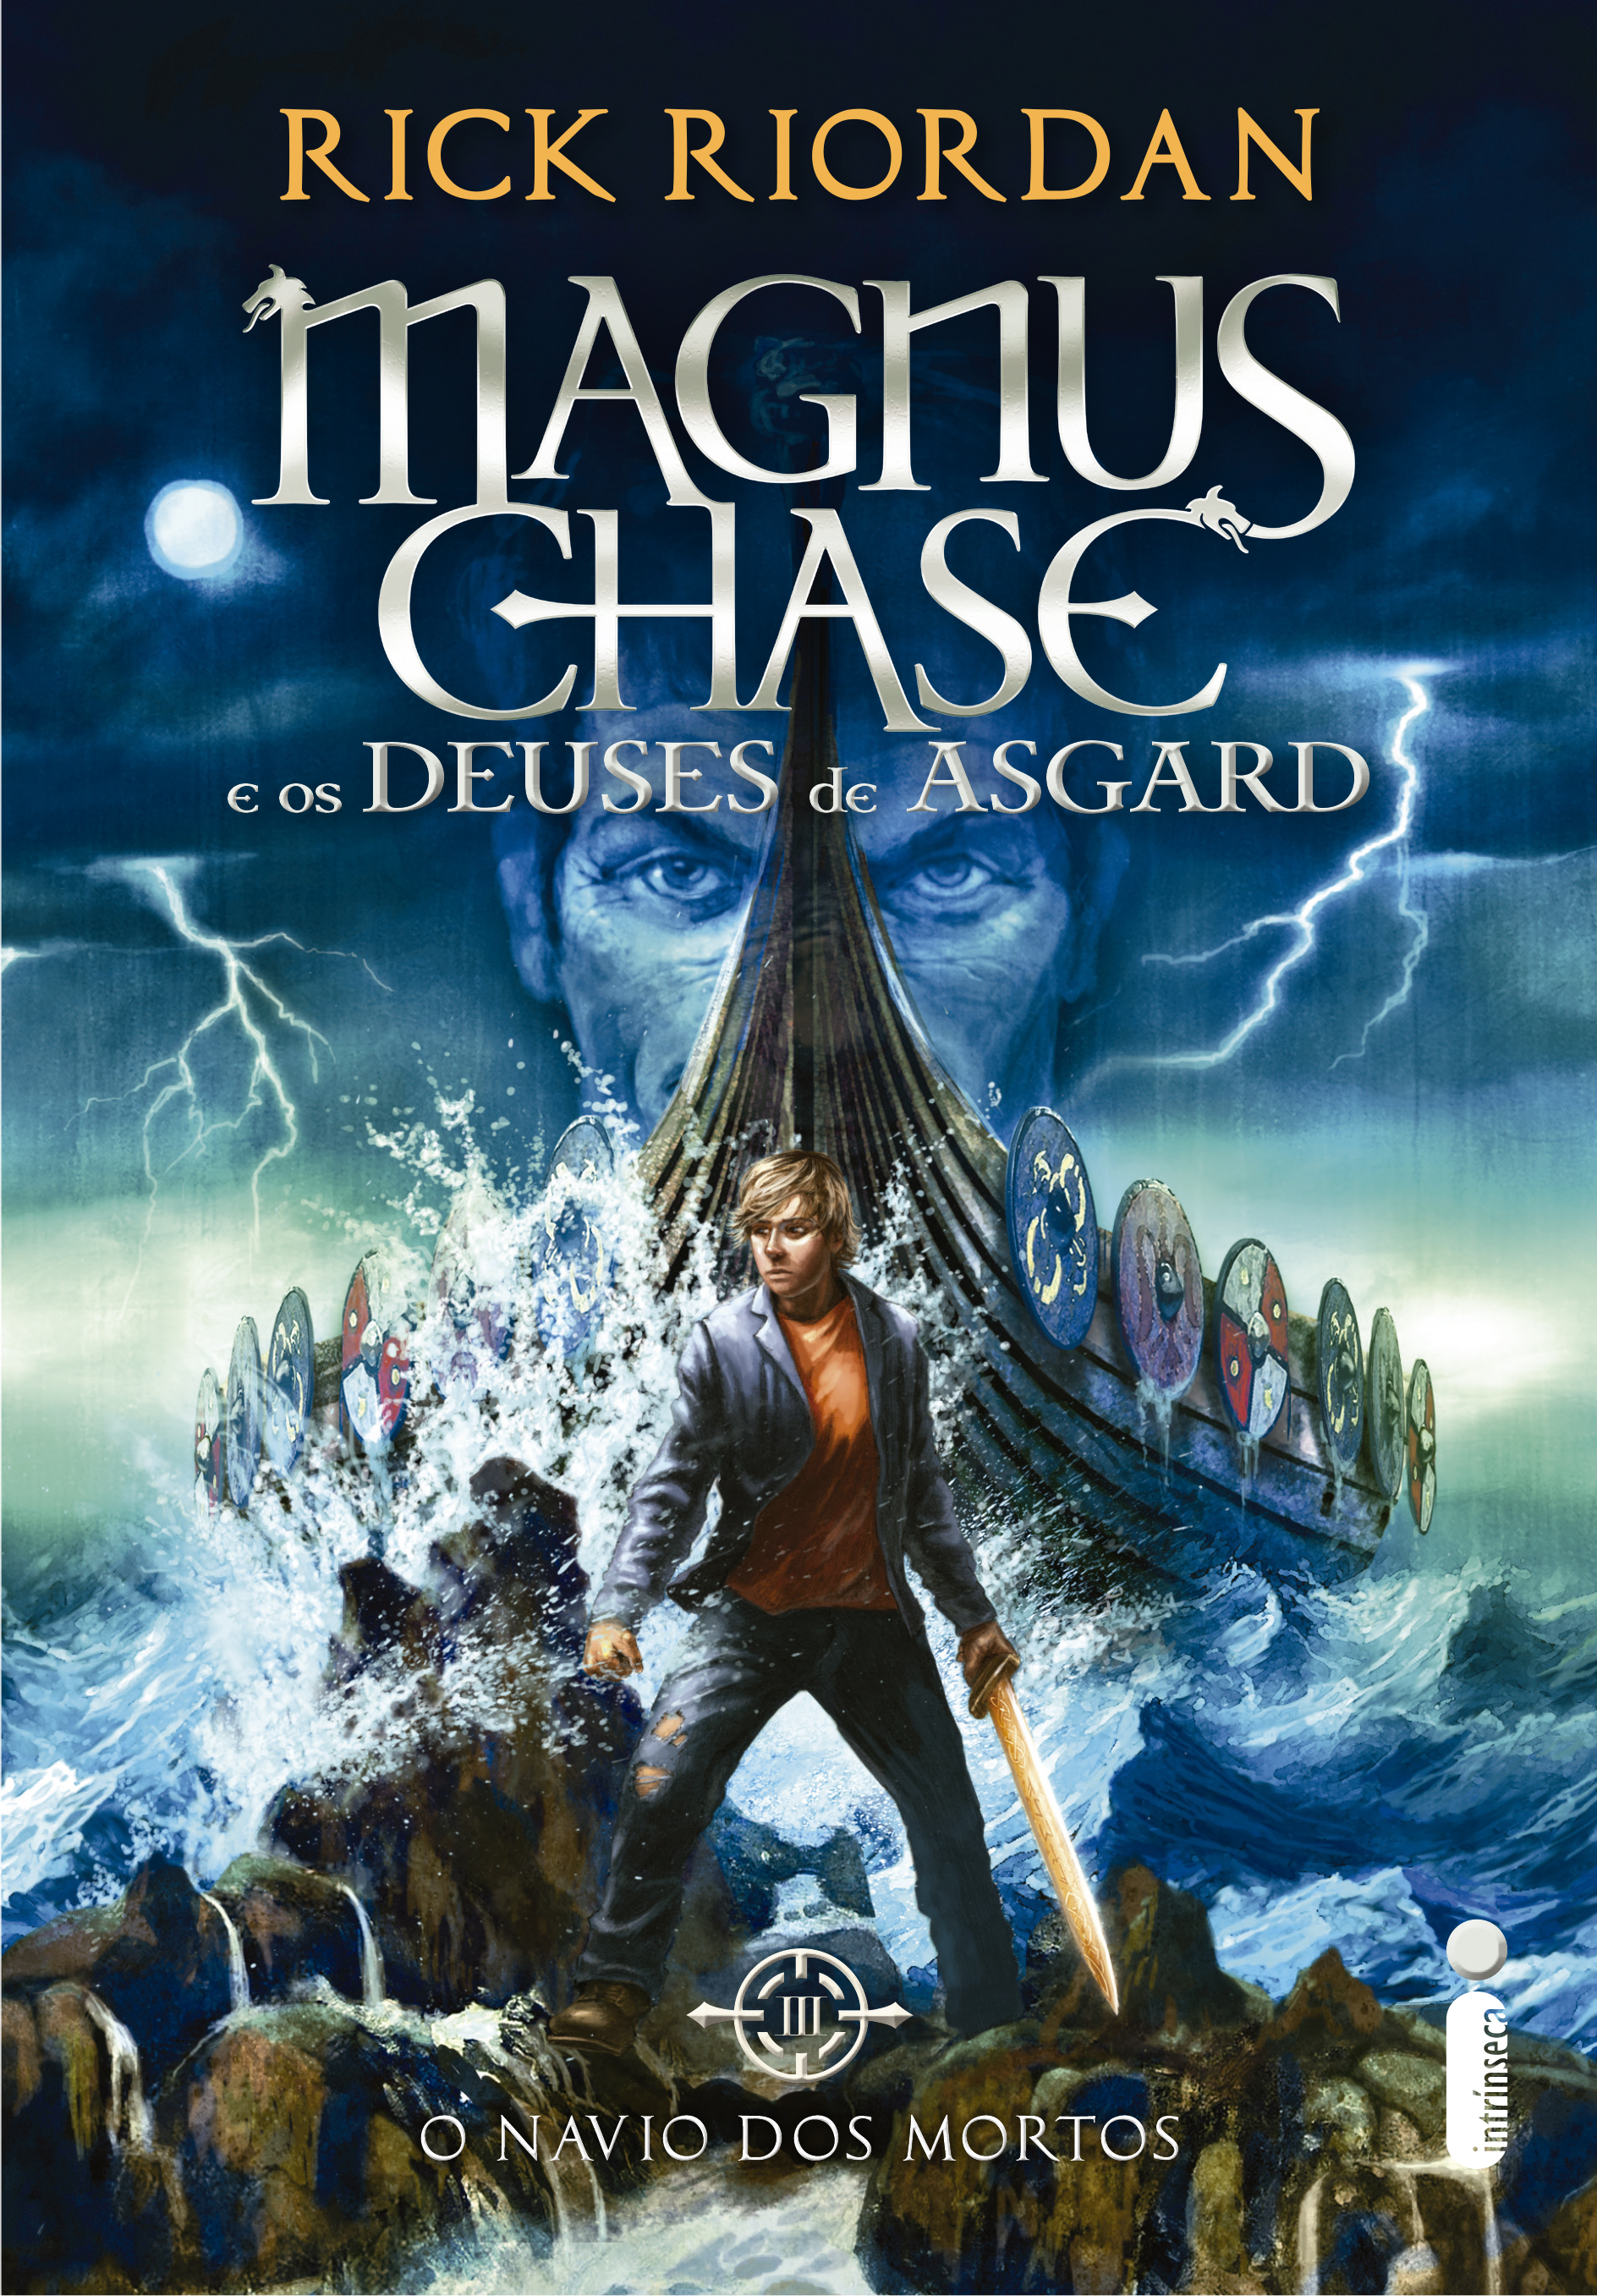 Volume final da série Magnus Chase e os deuses de Asgard lança em outubro!